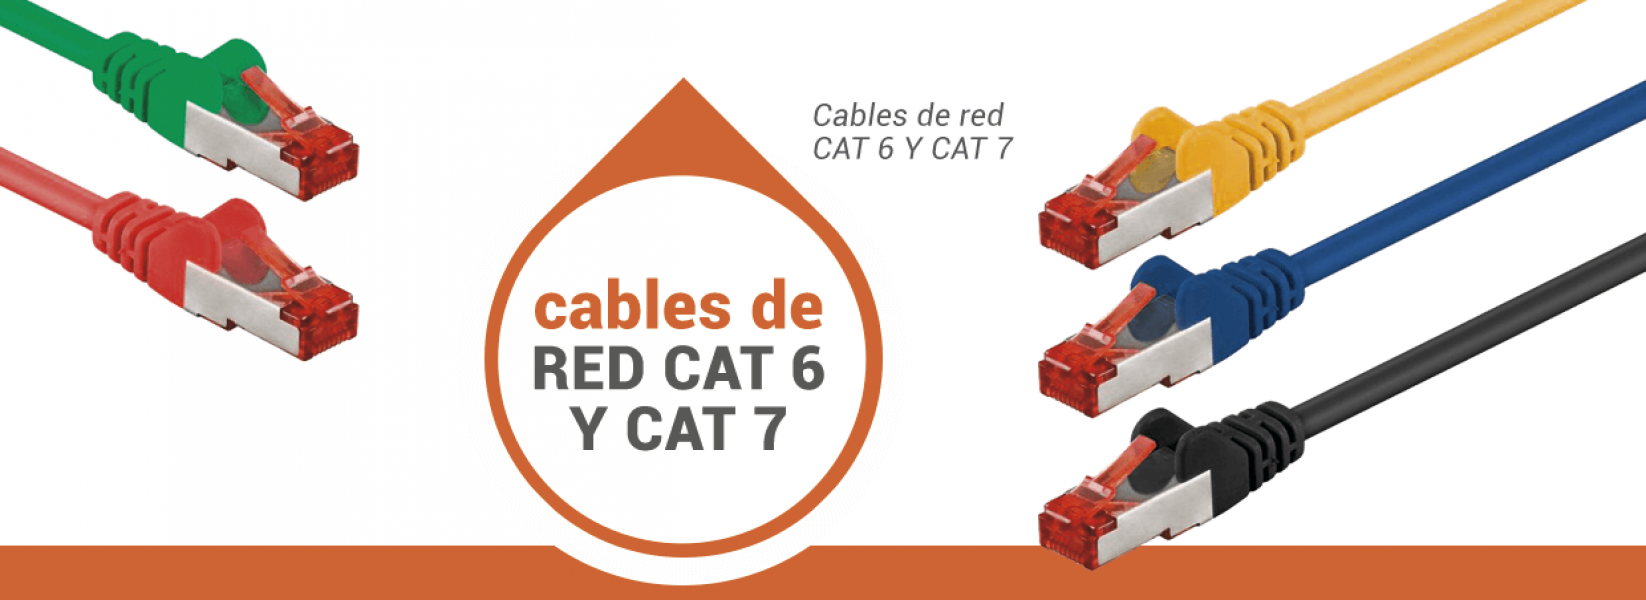 Tienda en Barcelona especializada en todo tipo de cables